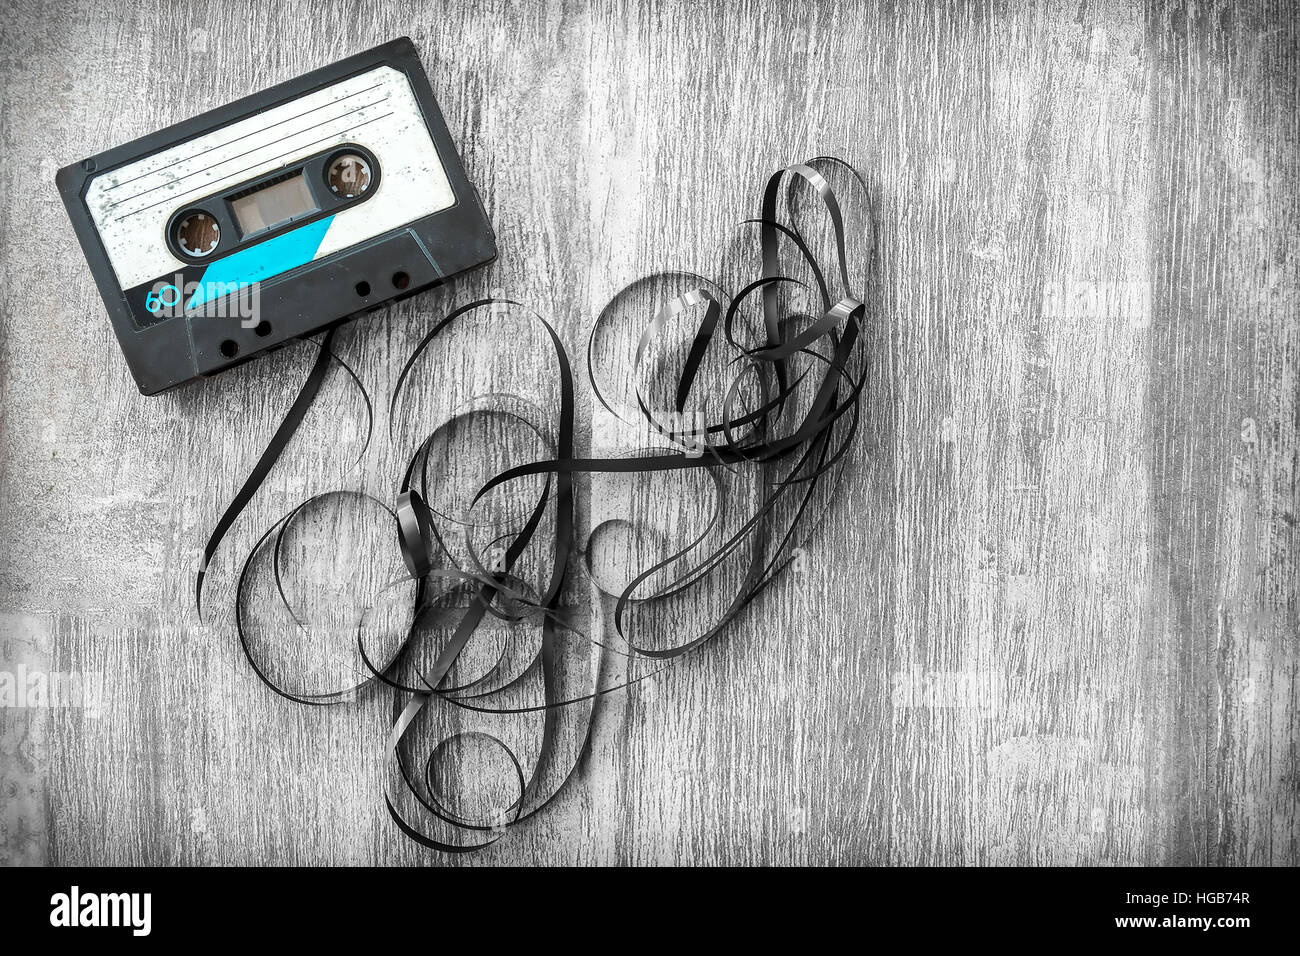 Las cintas de audio de fondo laminados madera vintage desenrollar el casete compacto musicassette playlist Foto de stock